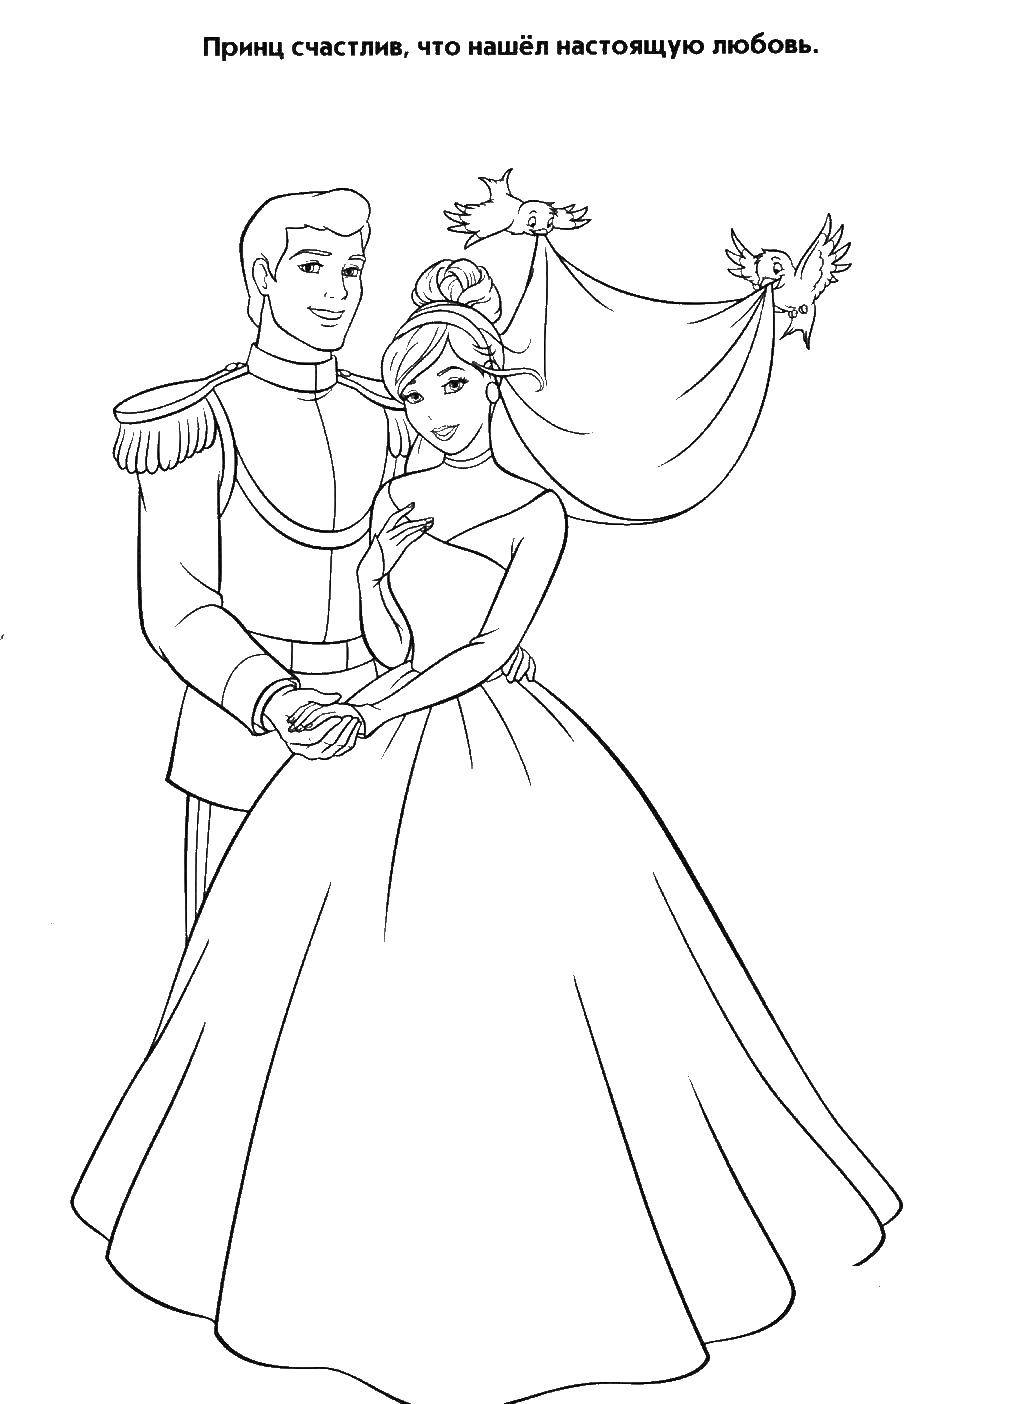 Название: Раскраска Свадьба принца и золушки. Категория: золушка. Теги: Золушка, принц.